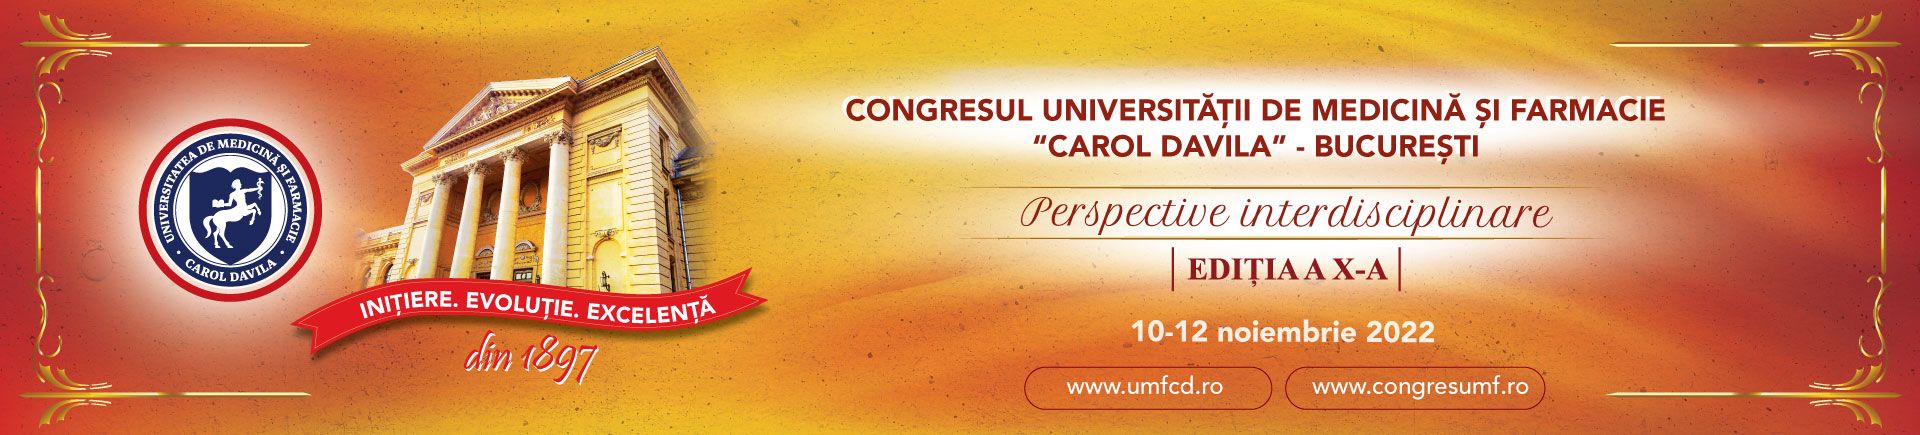 Congresul UMF „Carol Davila” din Bucureşti are loc în noiembrie